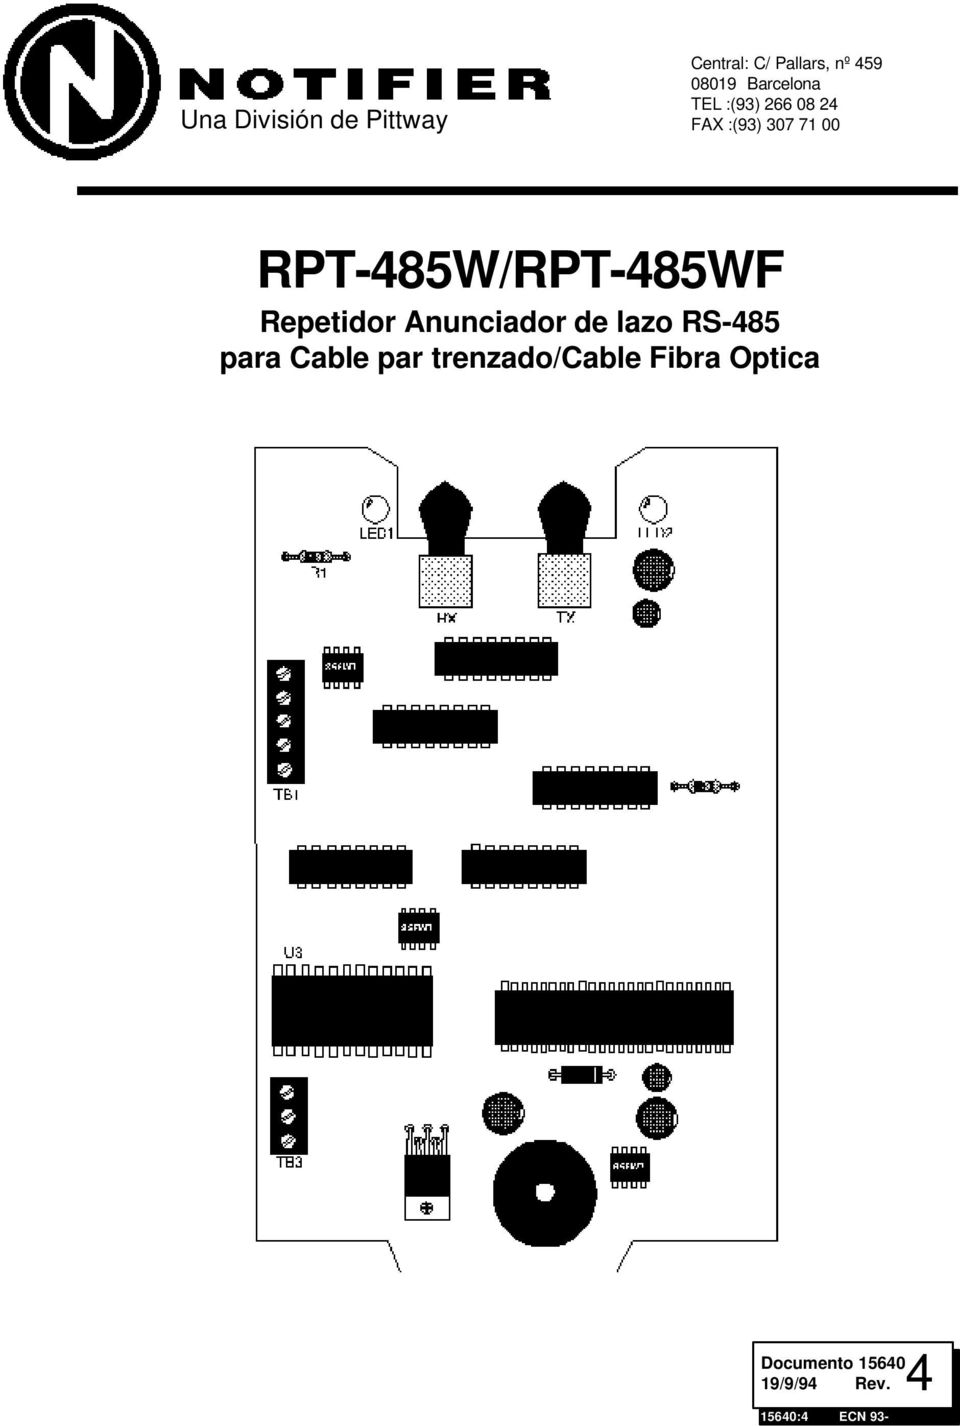 RPT-485W/RPT-485WF Repetidor Anunciador de lazo RS-485 para